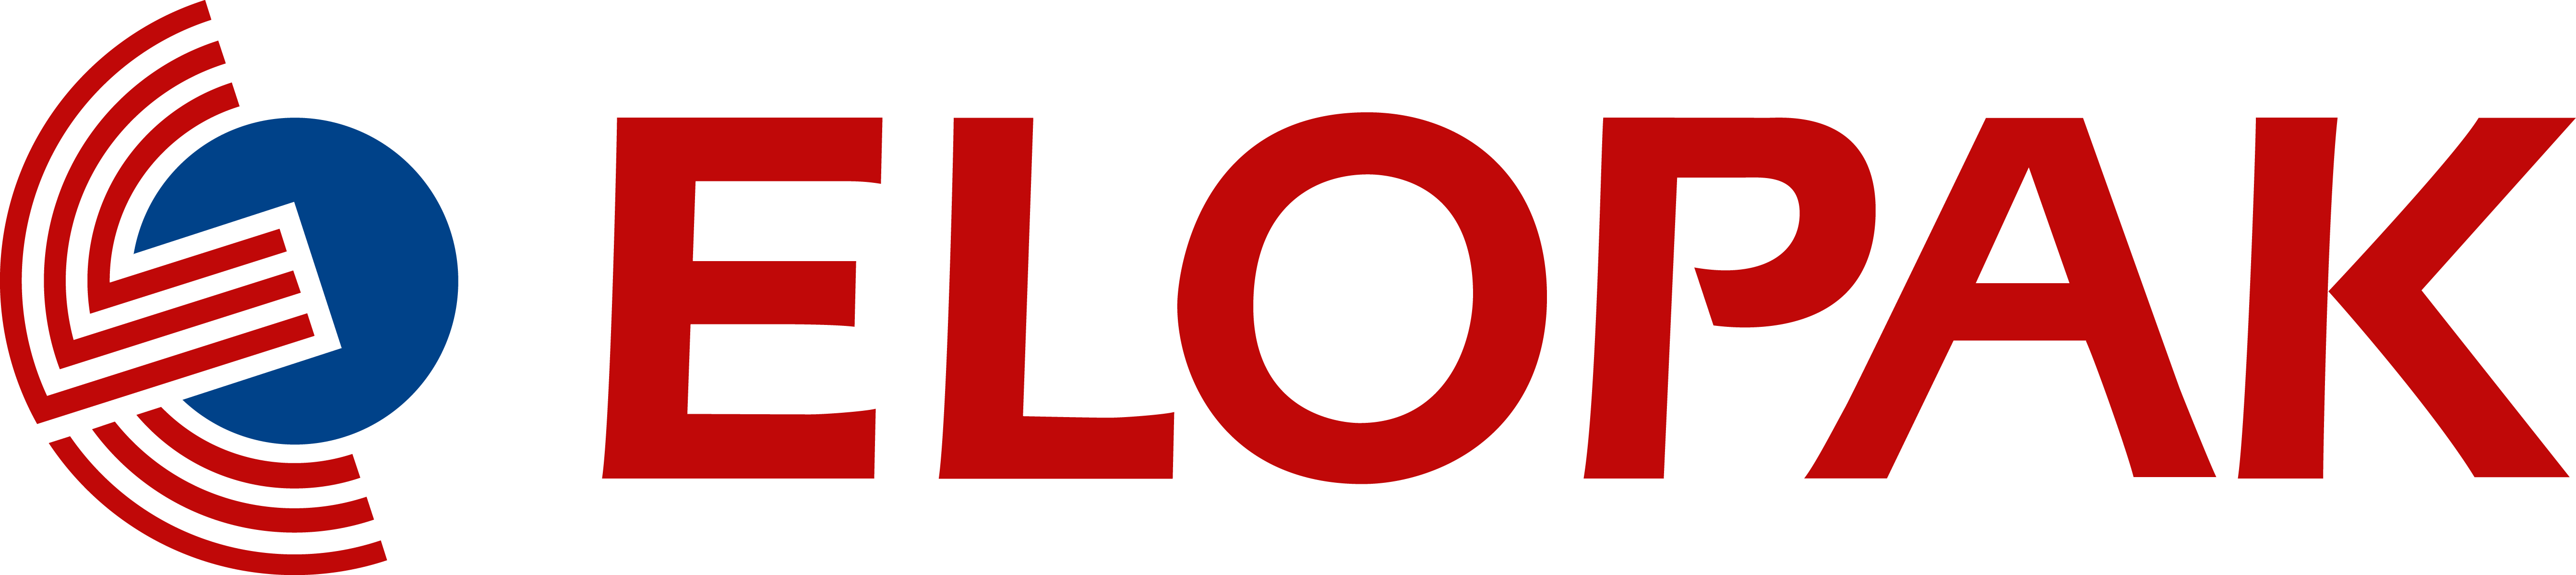 ELOPAK logo, logotype